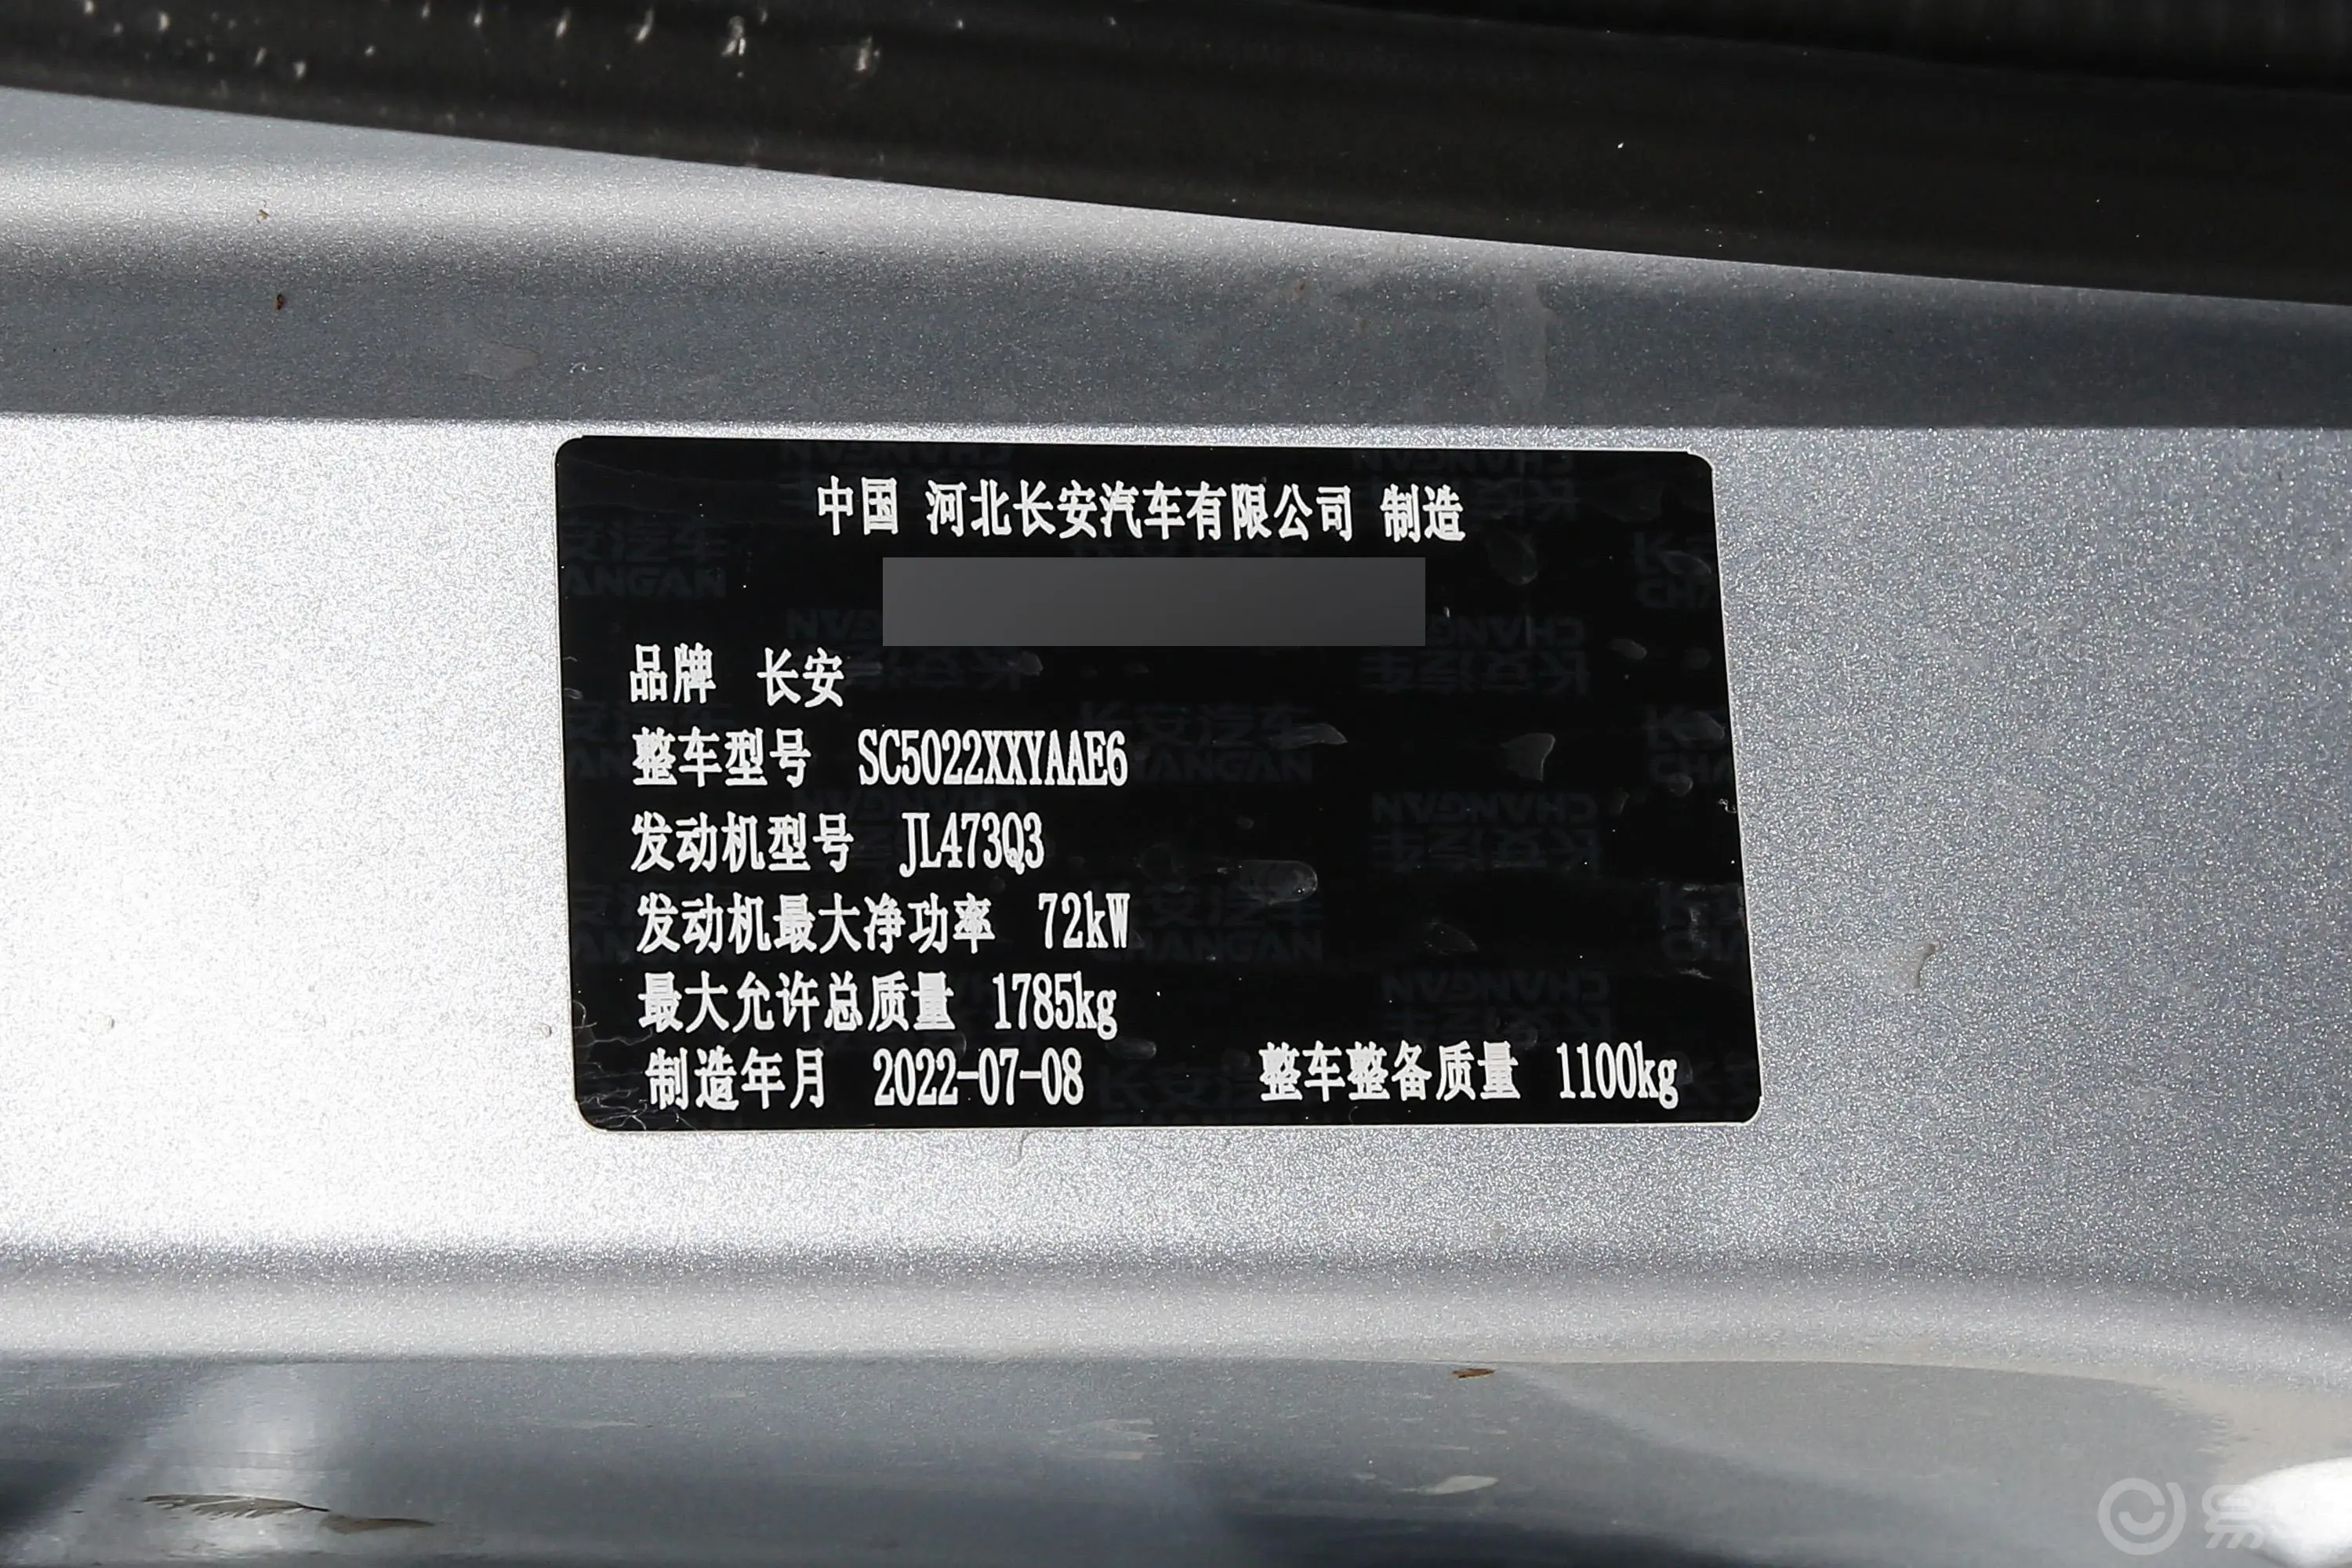 长安之星51.4L 厢式超值版 2座车辆信息铭牌